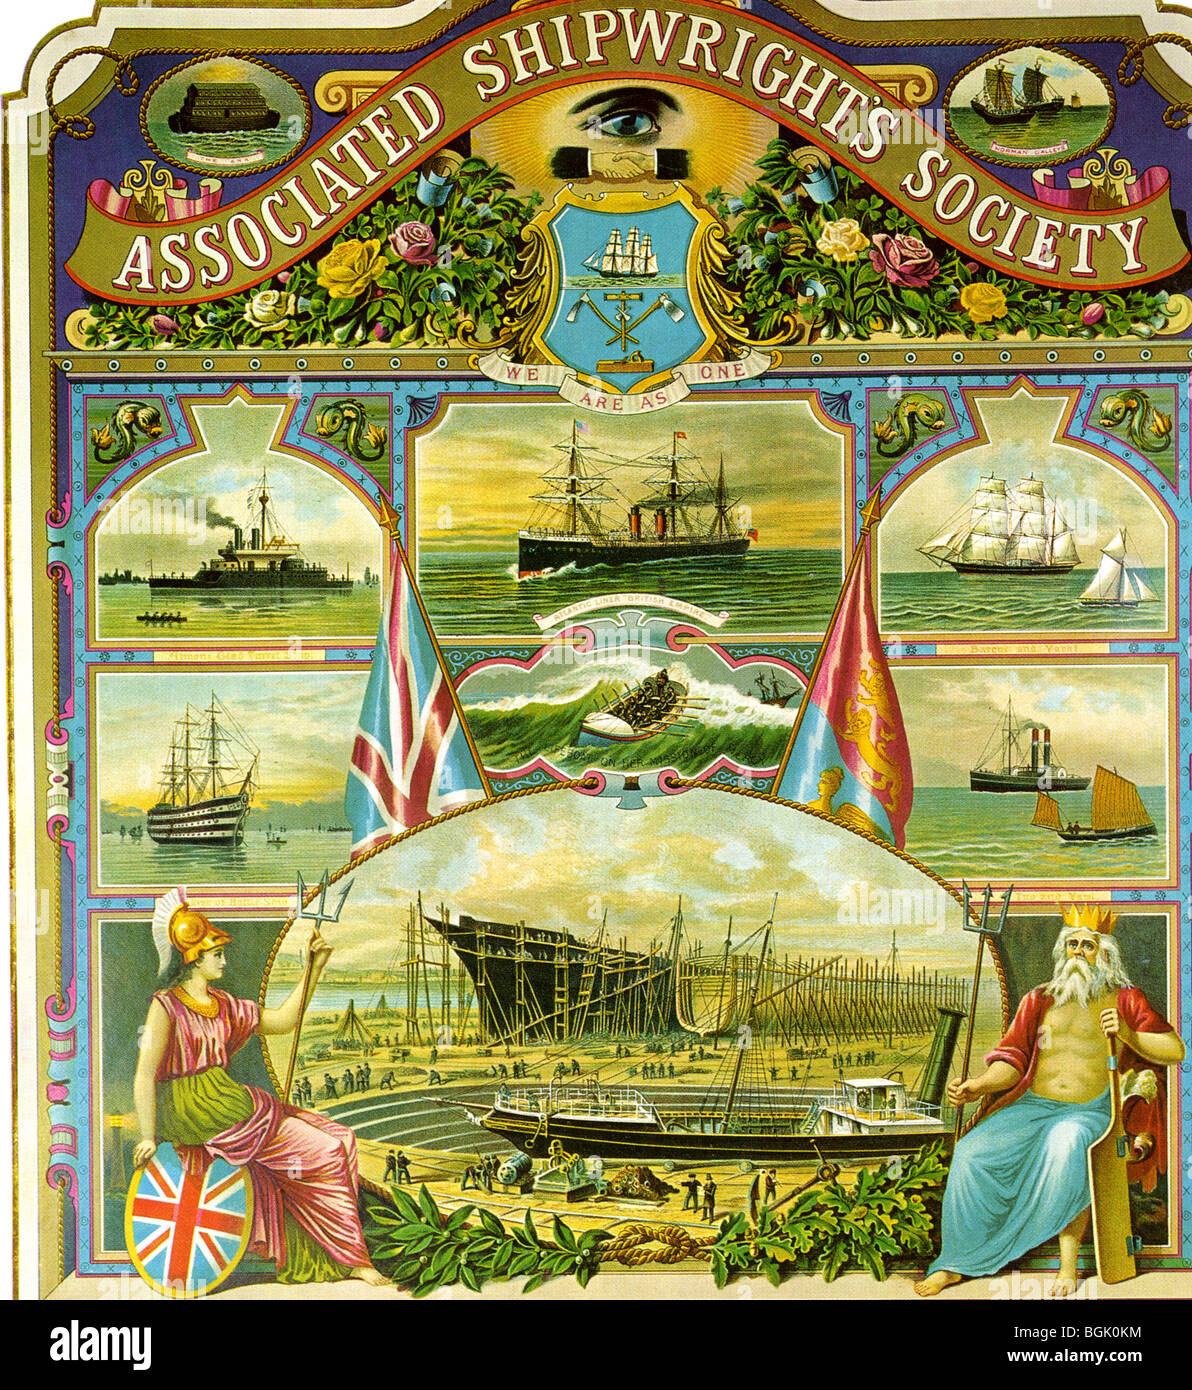 Damit verbundenen SHIPWRIGHTS SOCIETY - Beitrittsformular einer viktorianischen Gewerkschaft gegründet 1882 Stockfoto